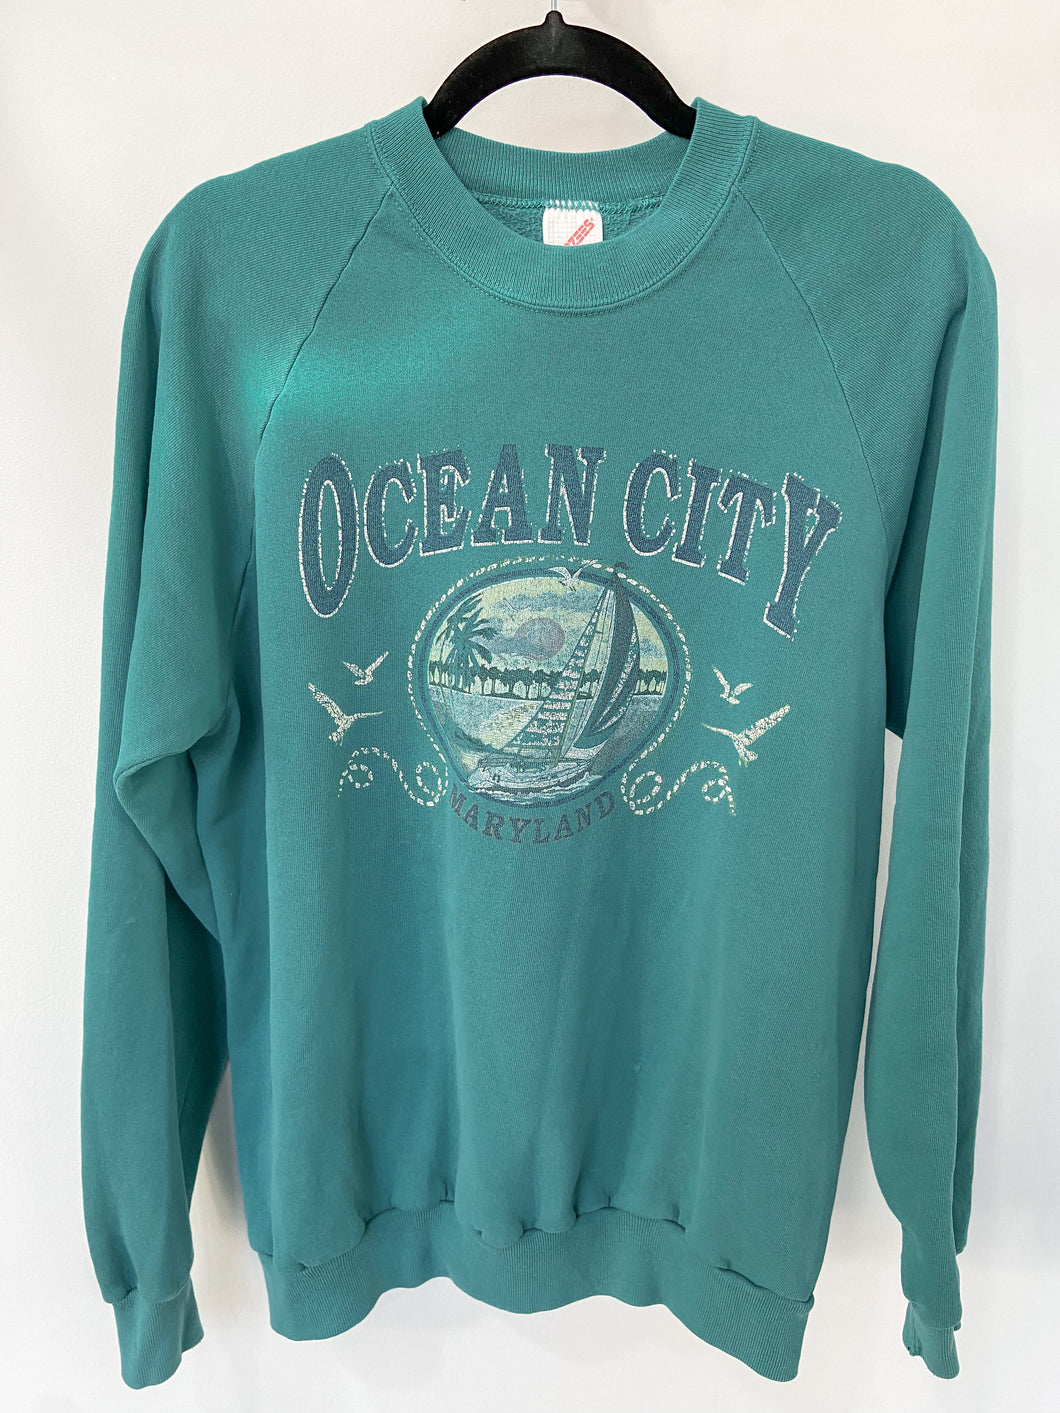 Vintage Ocean City Crewneck